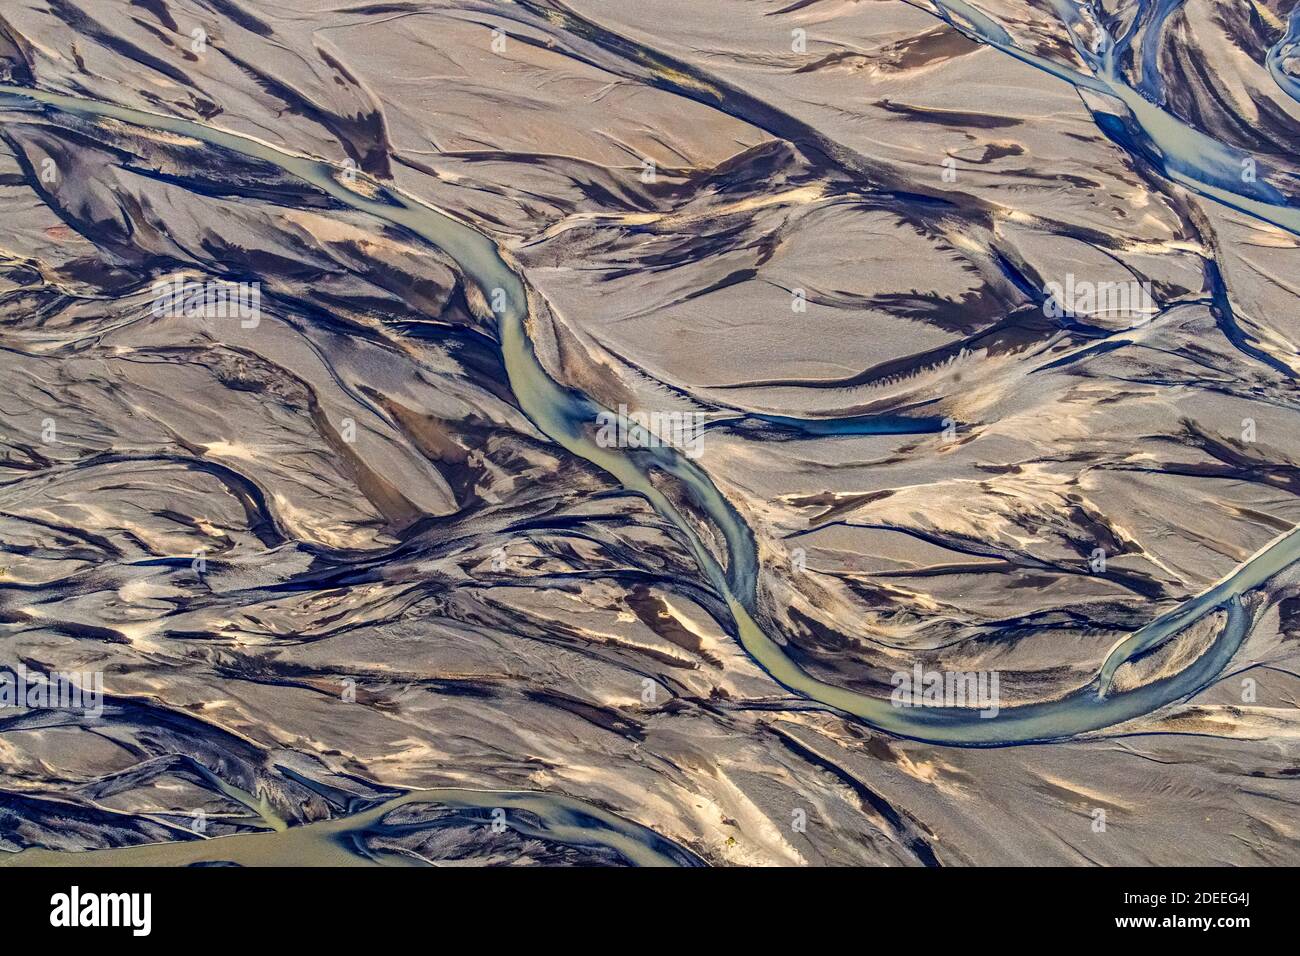 Vista aerea sul delta del fiume Markarfljot, pianura di sabbia, formata da sedimenti glaciali depositati dall'acqua di fusione all'esterno in estate, Islanda Foto Stock